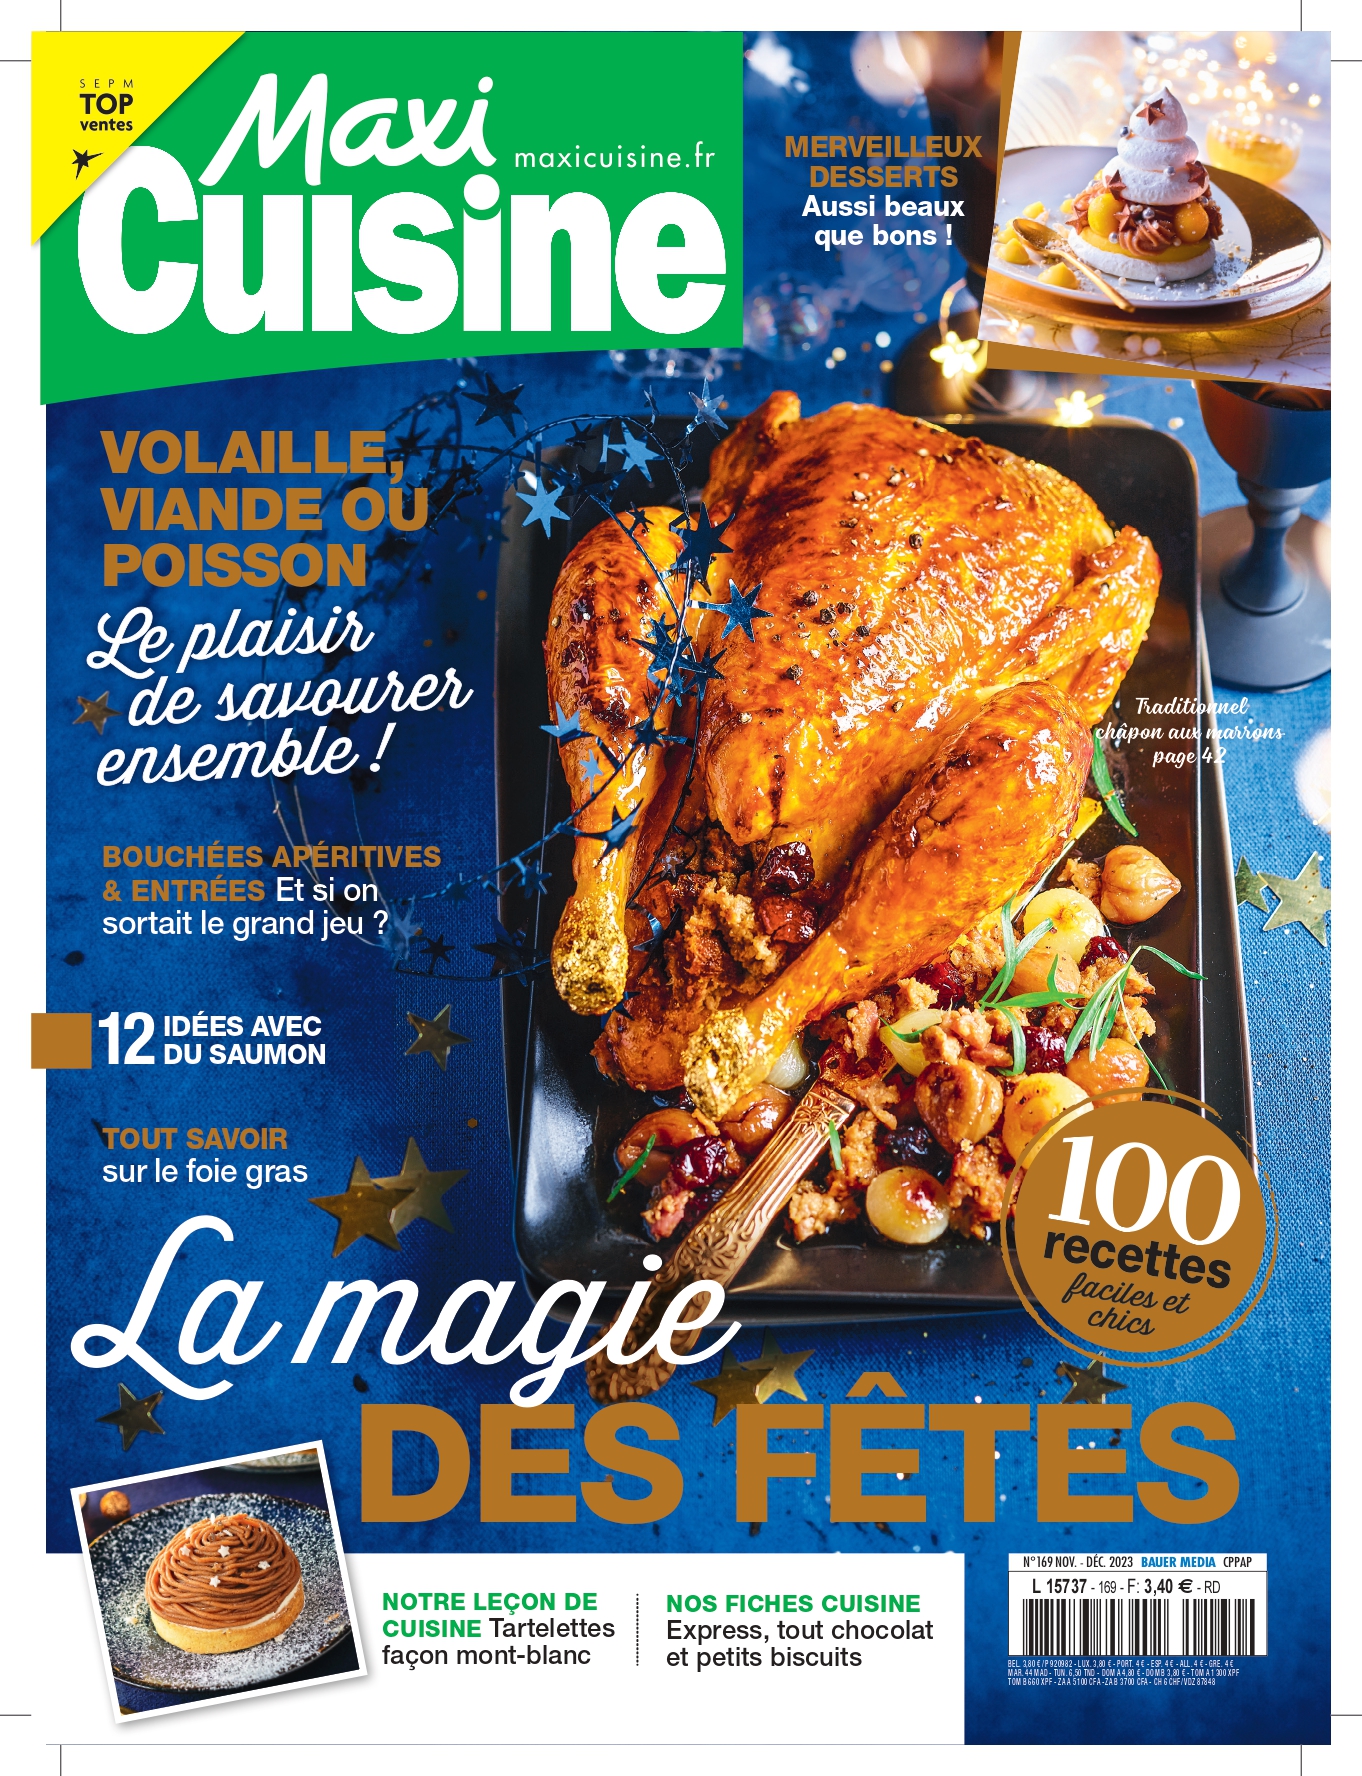 maxi cuisine magazine noel